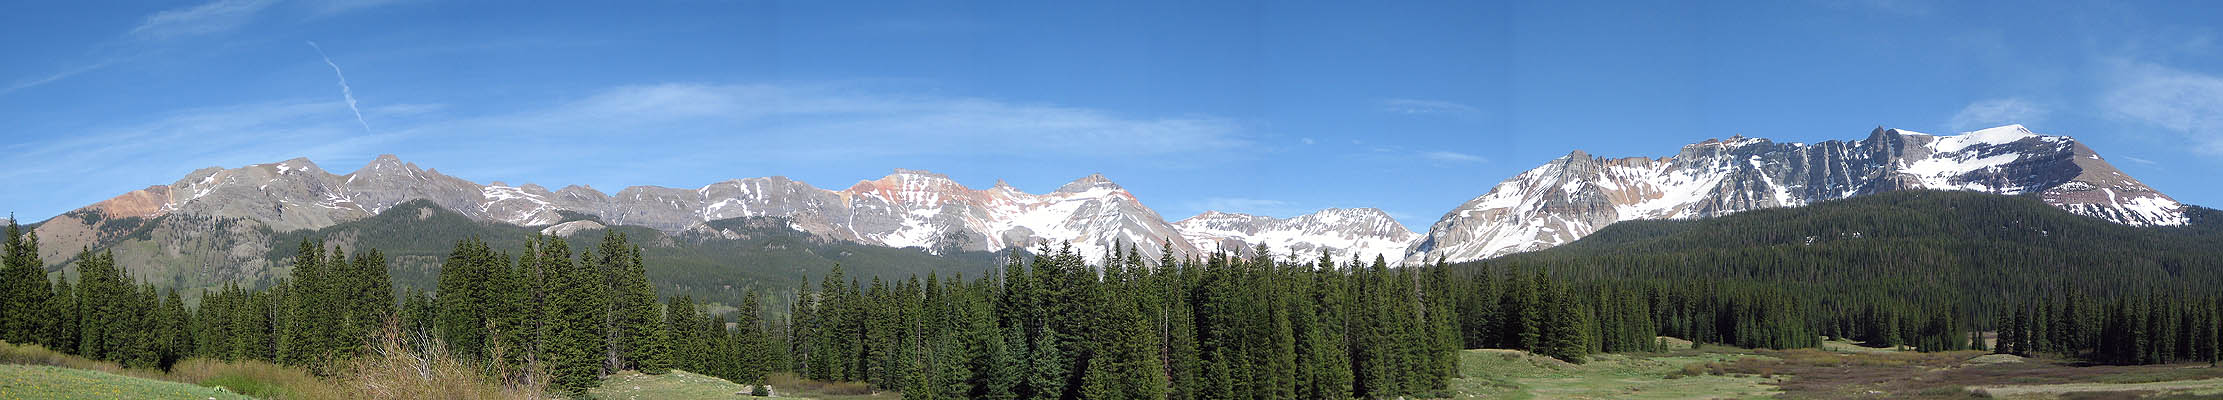 Telluride 2006: Panoramic View 2